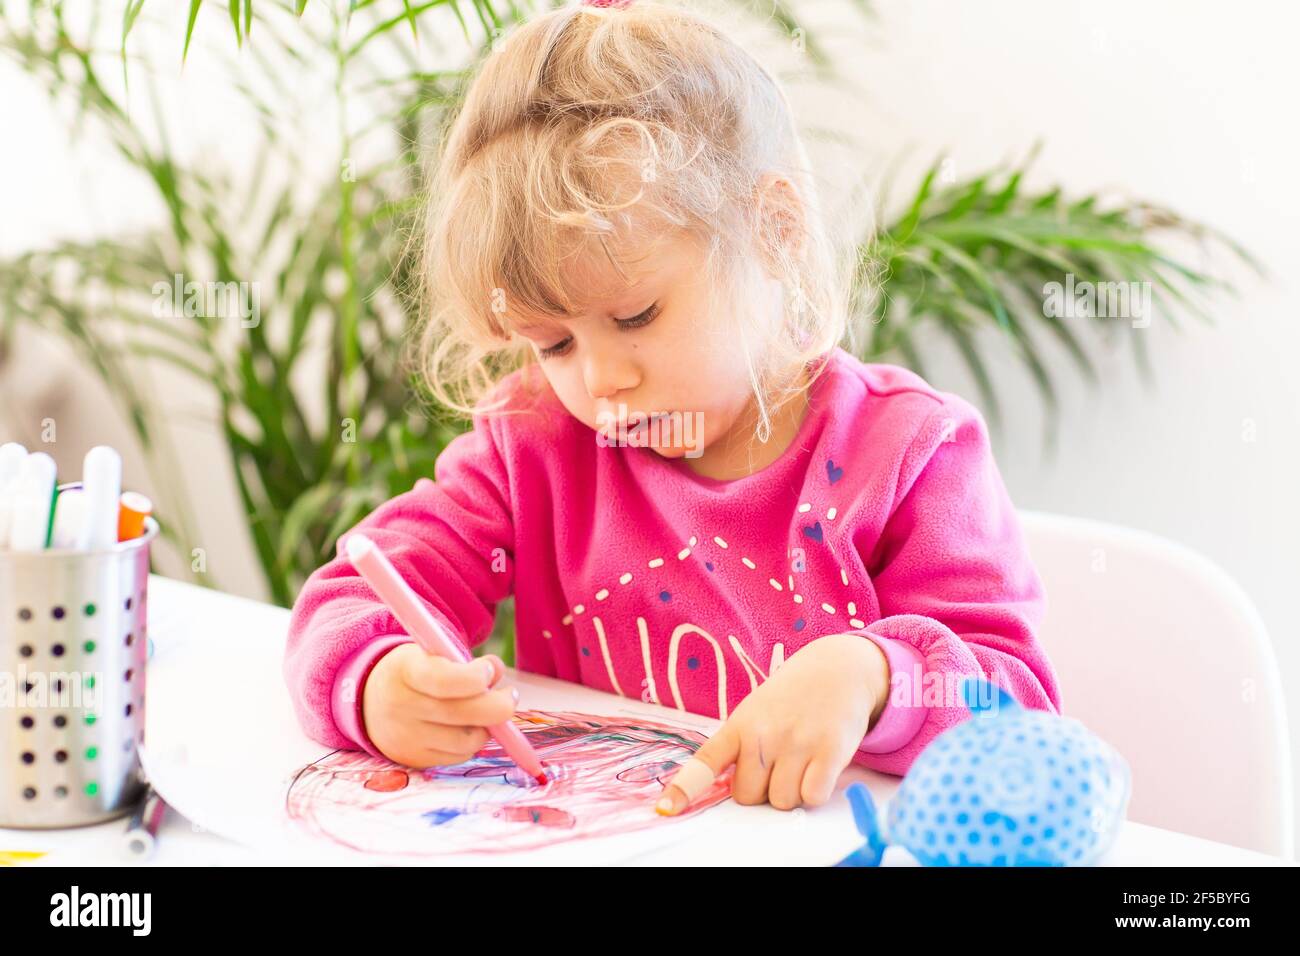 Sotto quarantena divertimento. La pittura della ragazza piccola durante l'epidemia del coronavirus e facendo i compiti. Stile di vita sotto virus corona. Foto Stock